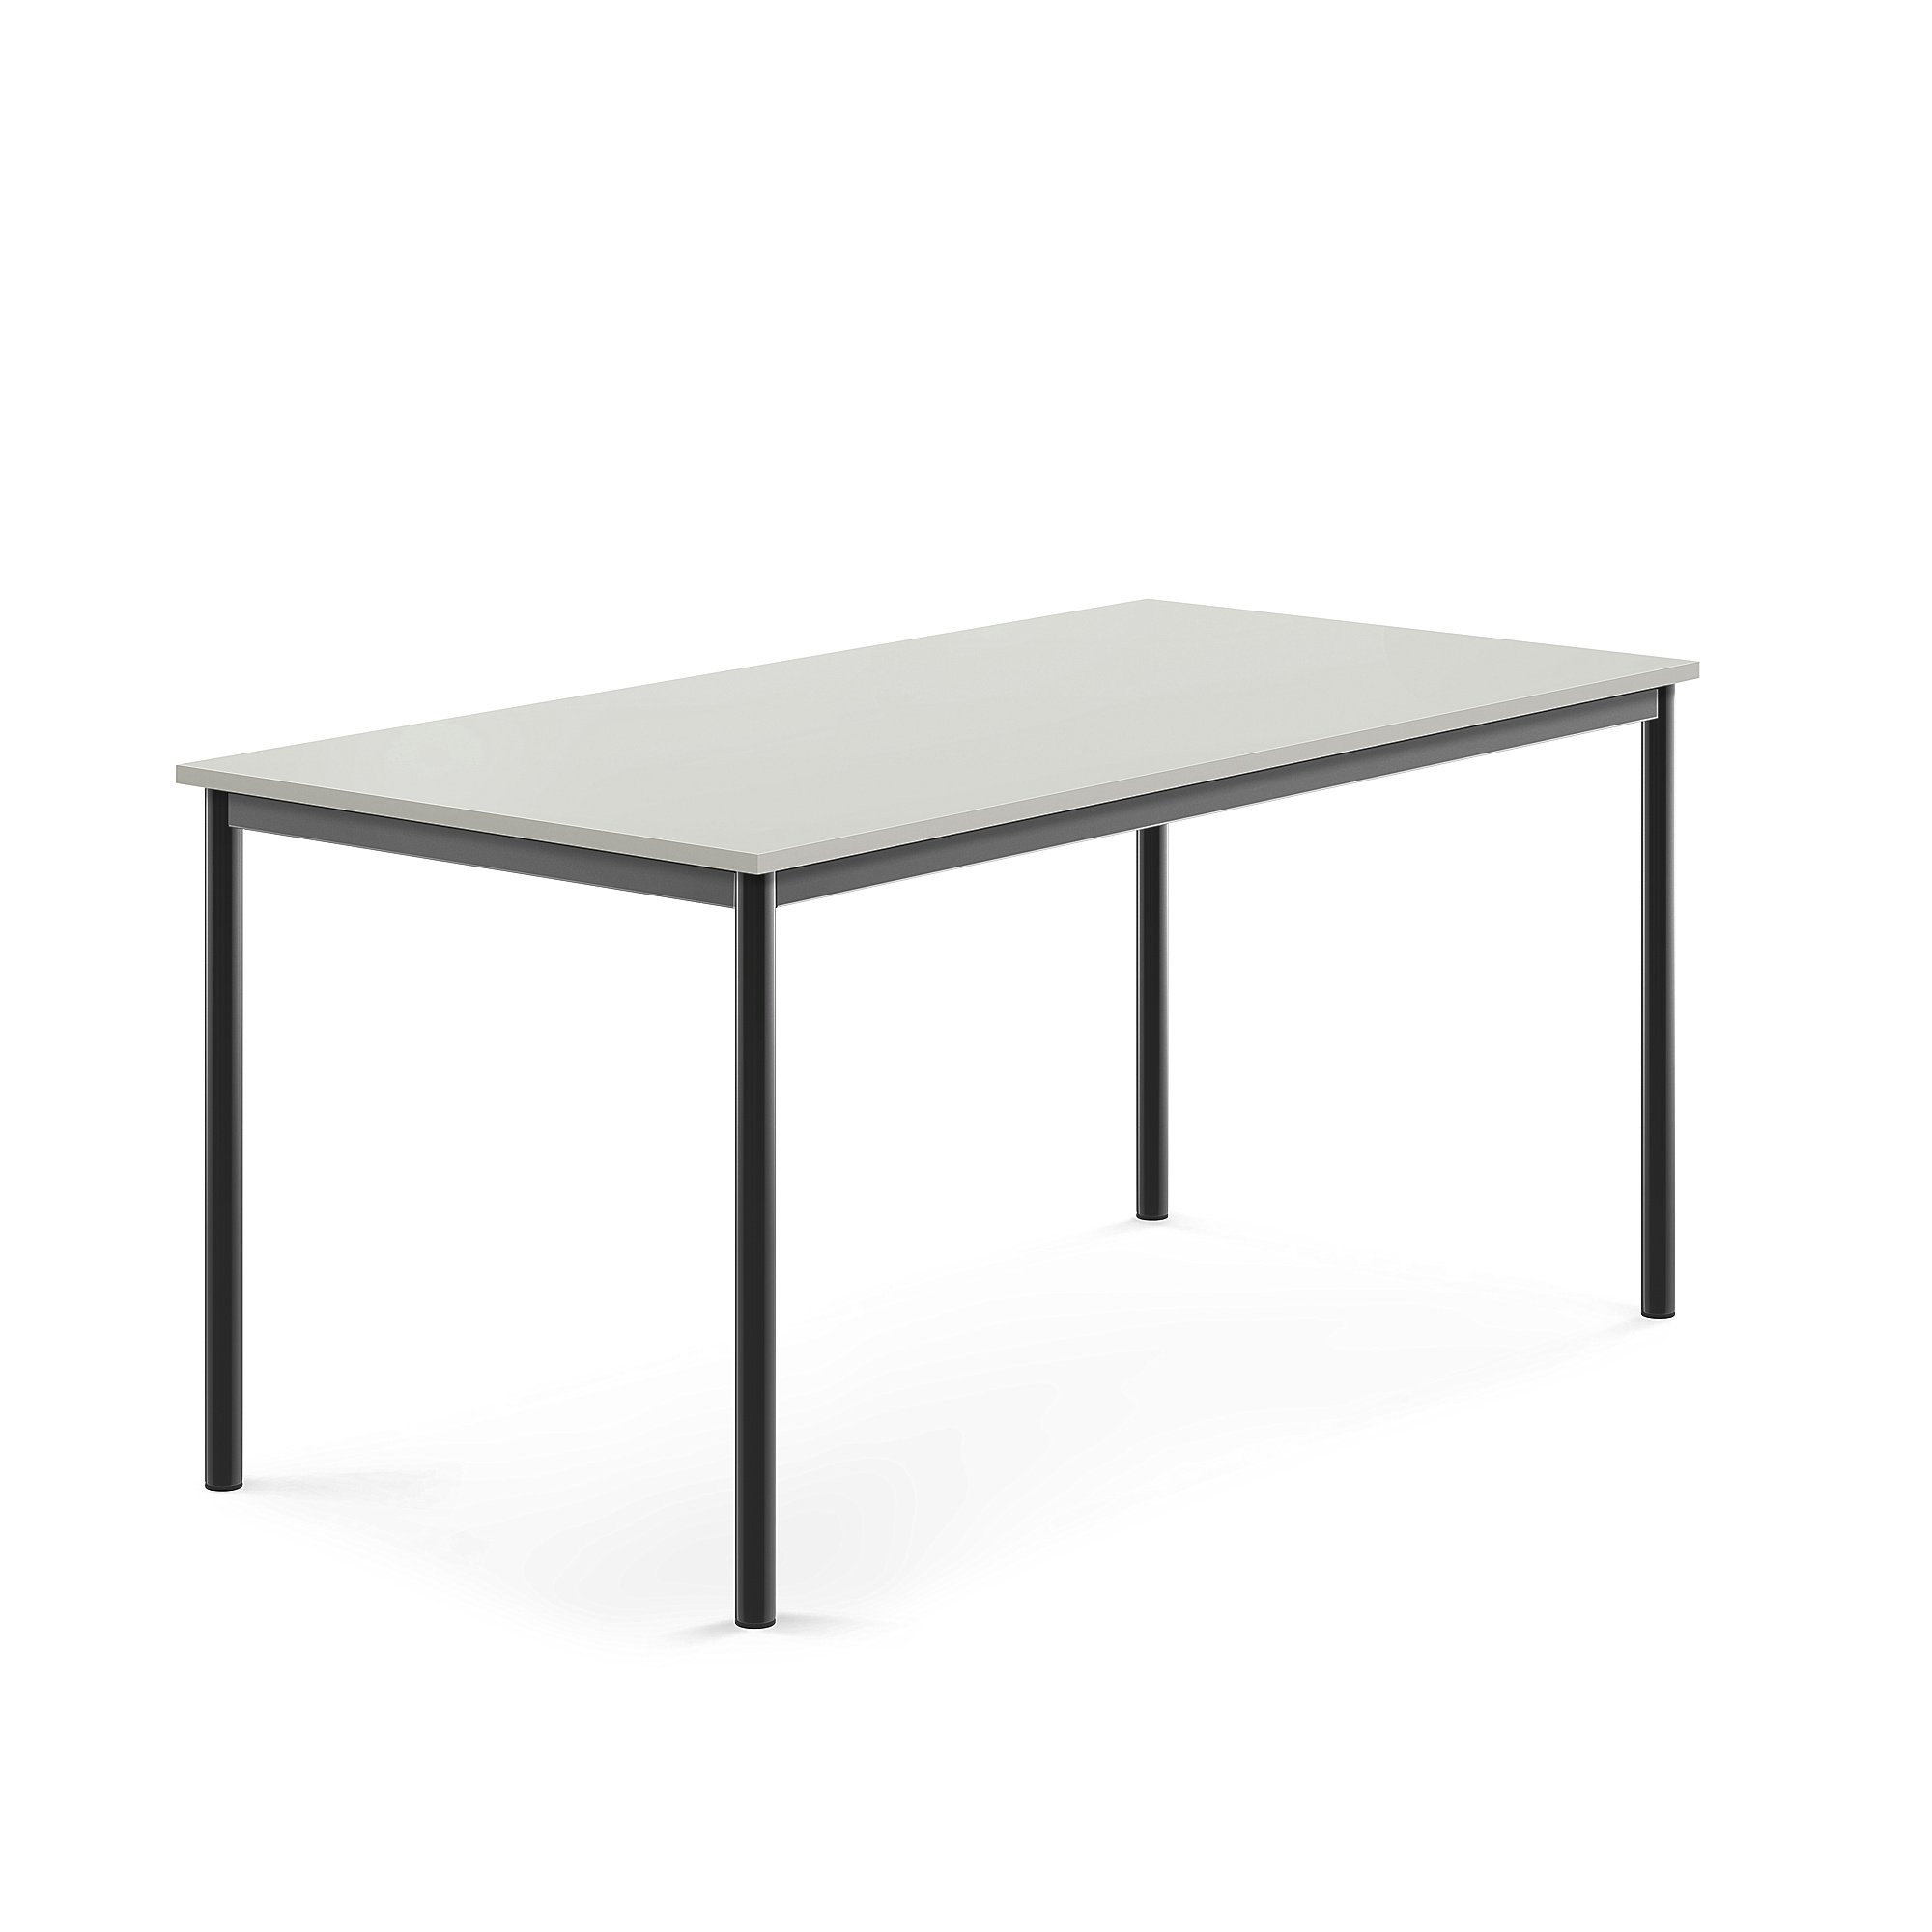 Stůl BORÅS, 1600x800x720 mm, antracitově šedé nohy, HPL deska, šedá